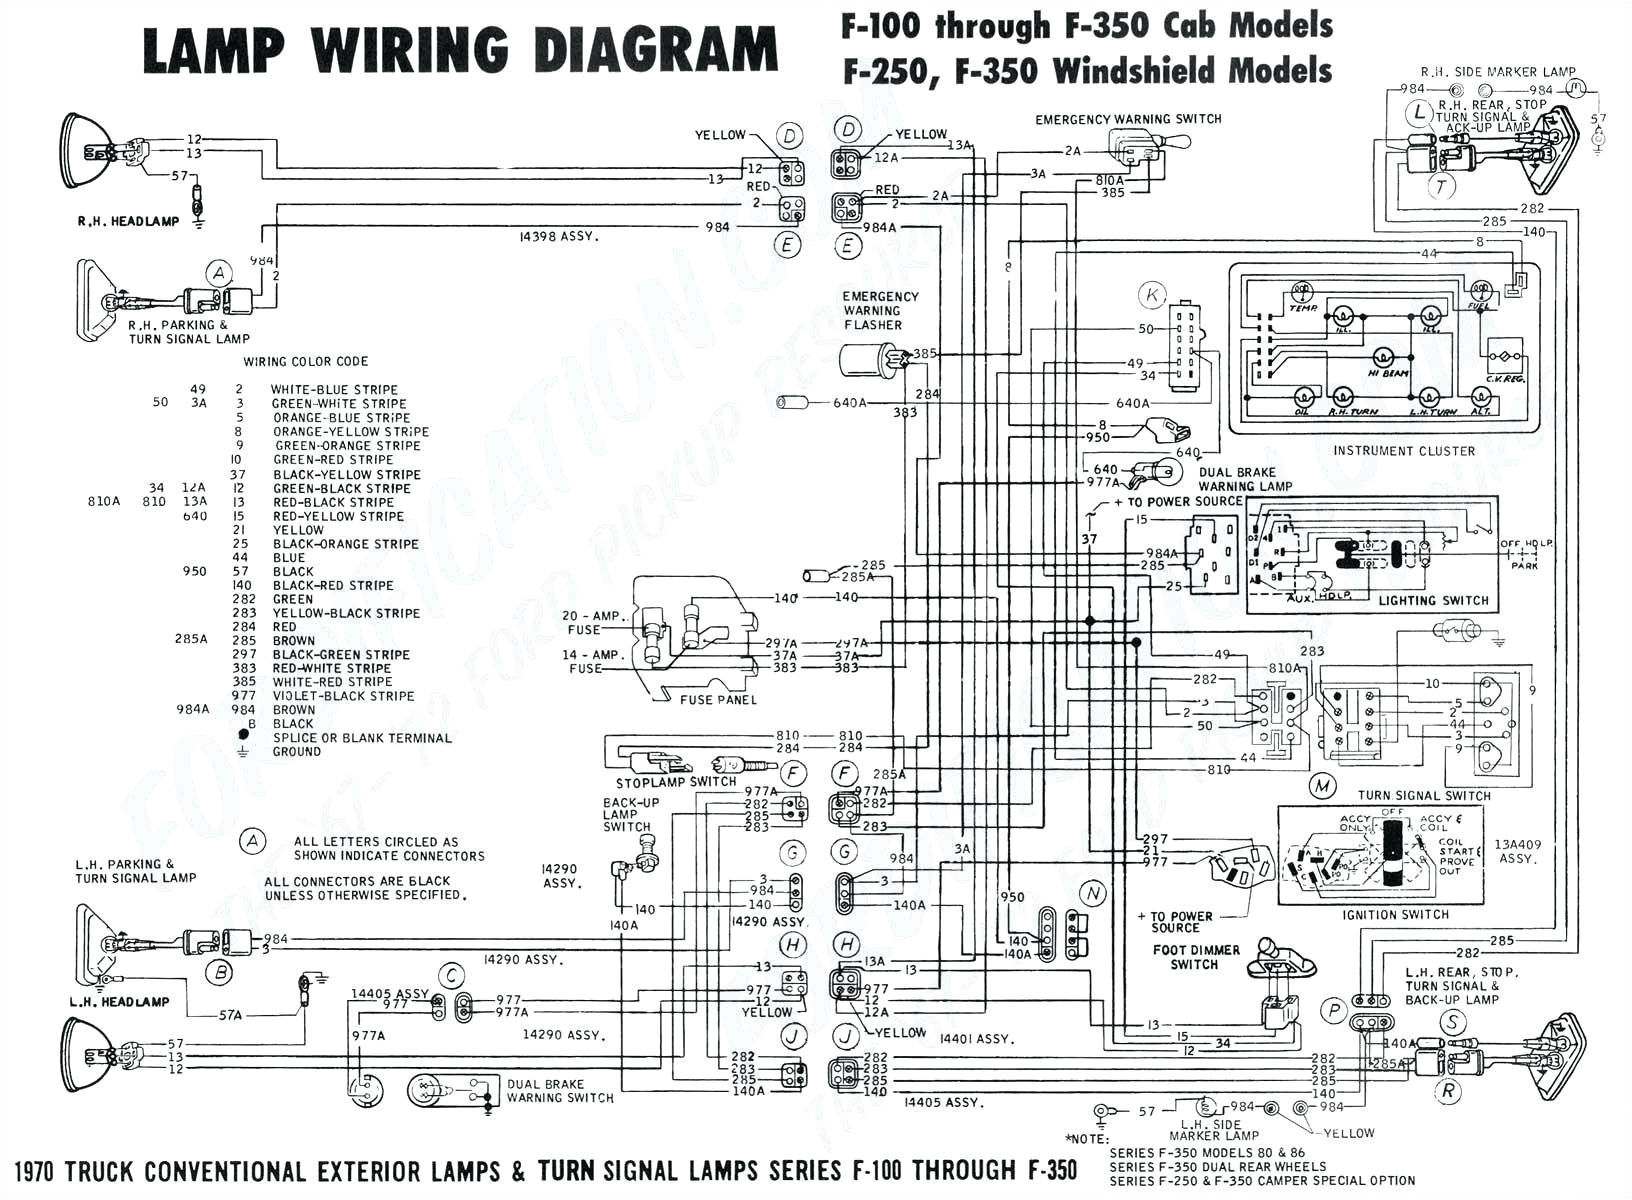 dc reversing relay wiring diagram hecho wiring diagram technic wiring diagram pixhawk light bar wiring diagram